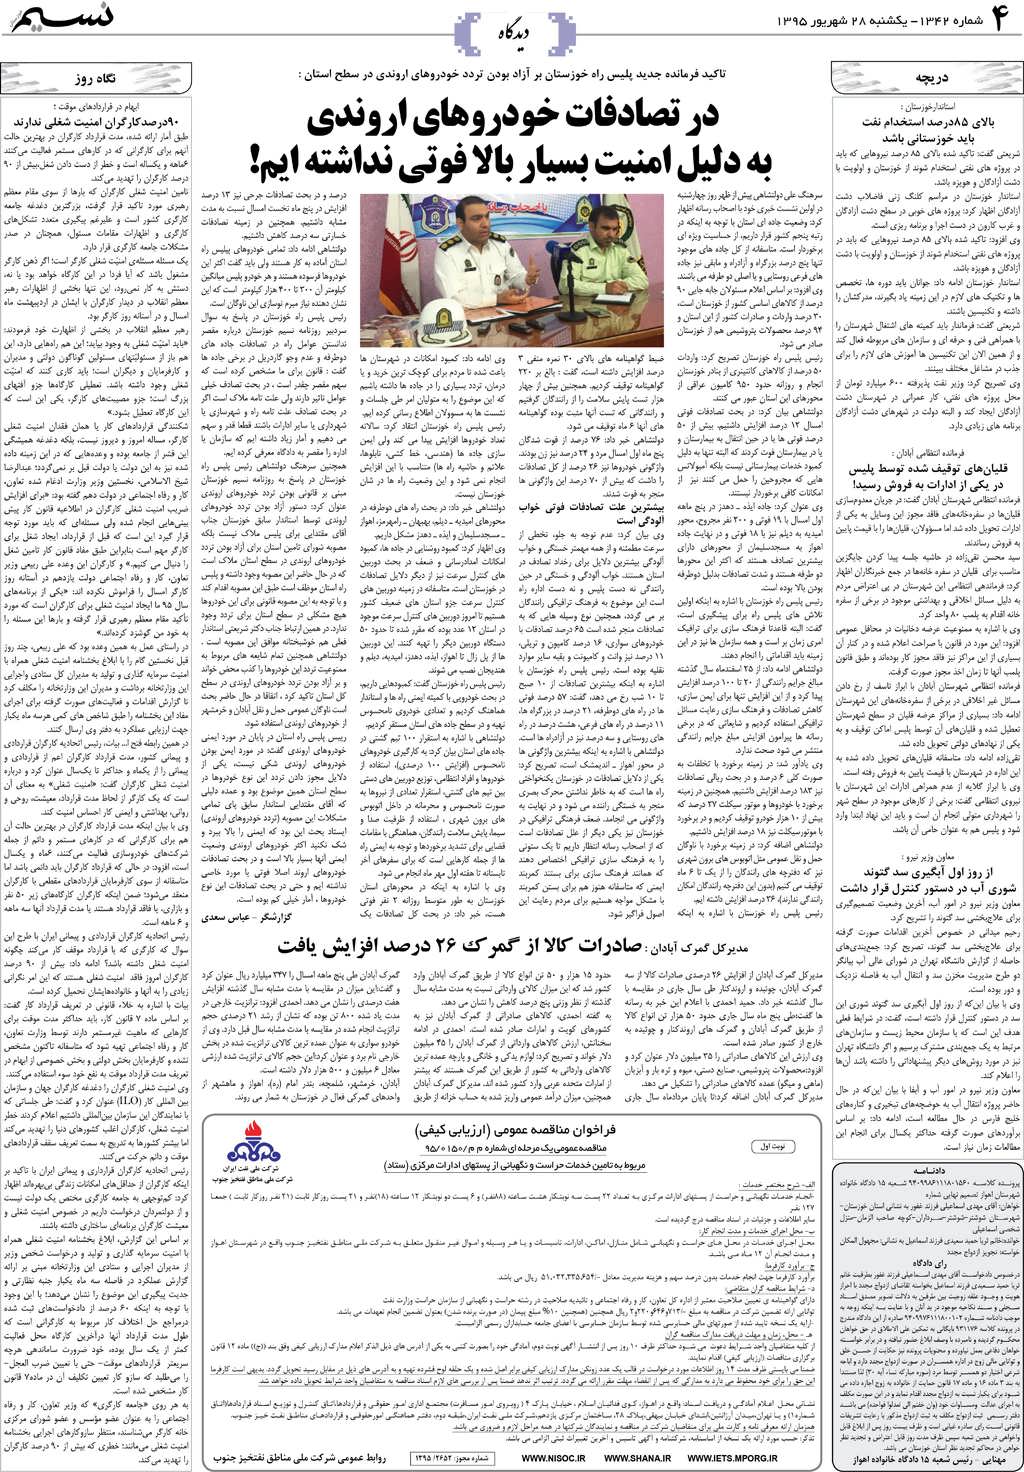 صفحه دیدگاه روزنامه نسیم شماره 1342